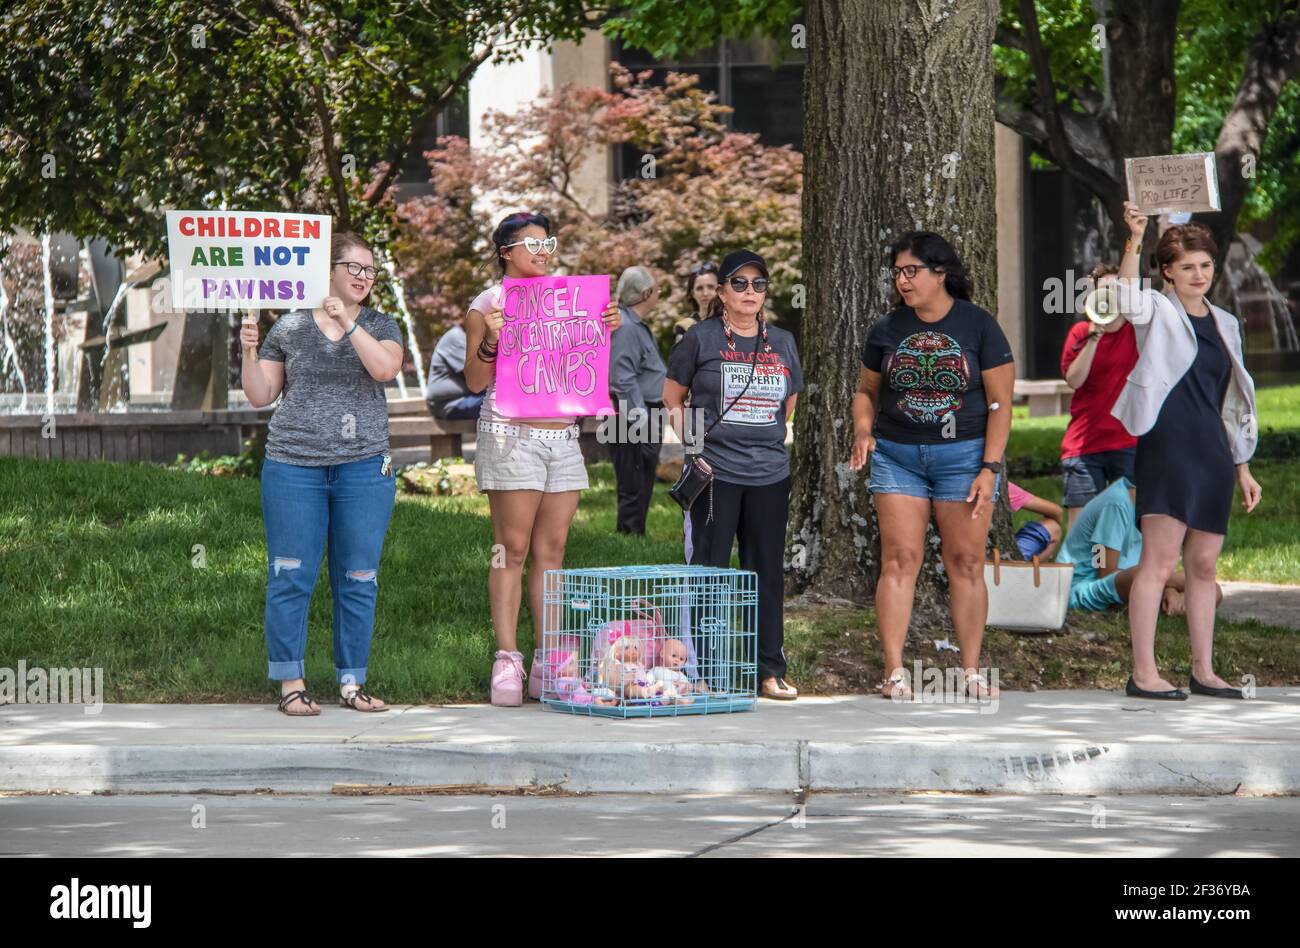 7-2-2019 Tulsa USA - des manifestants au parc avec des panneaux et des poupées Dans une cage-les enfants ne sont pas des pions - est-ce ce que Cela signifie être pro-vie - concentration ca Banque D'Images